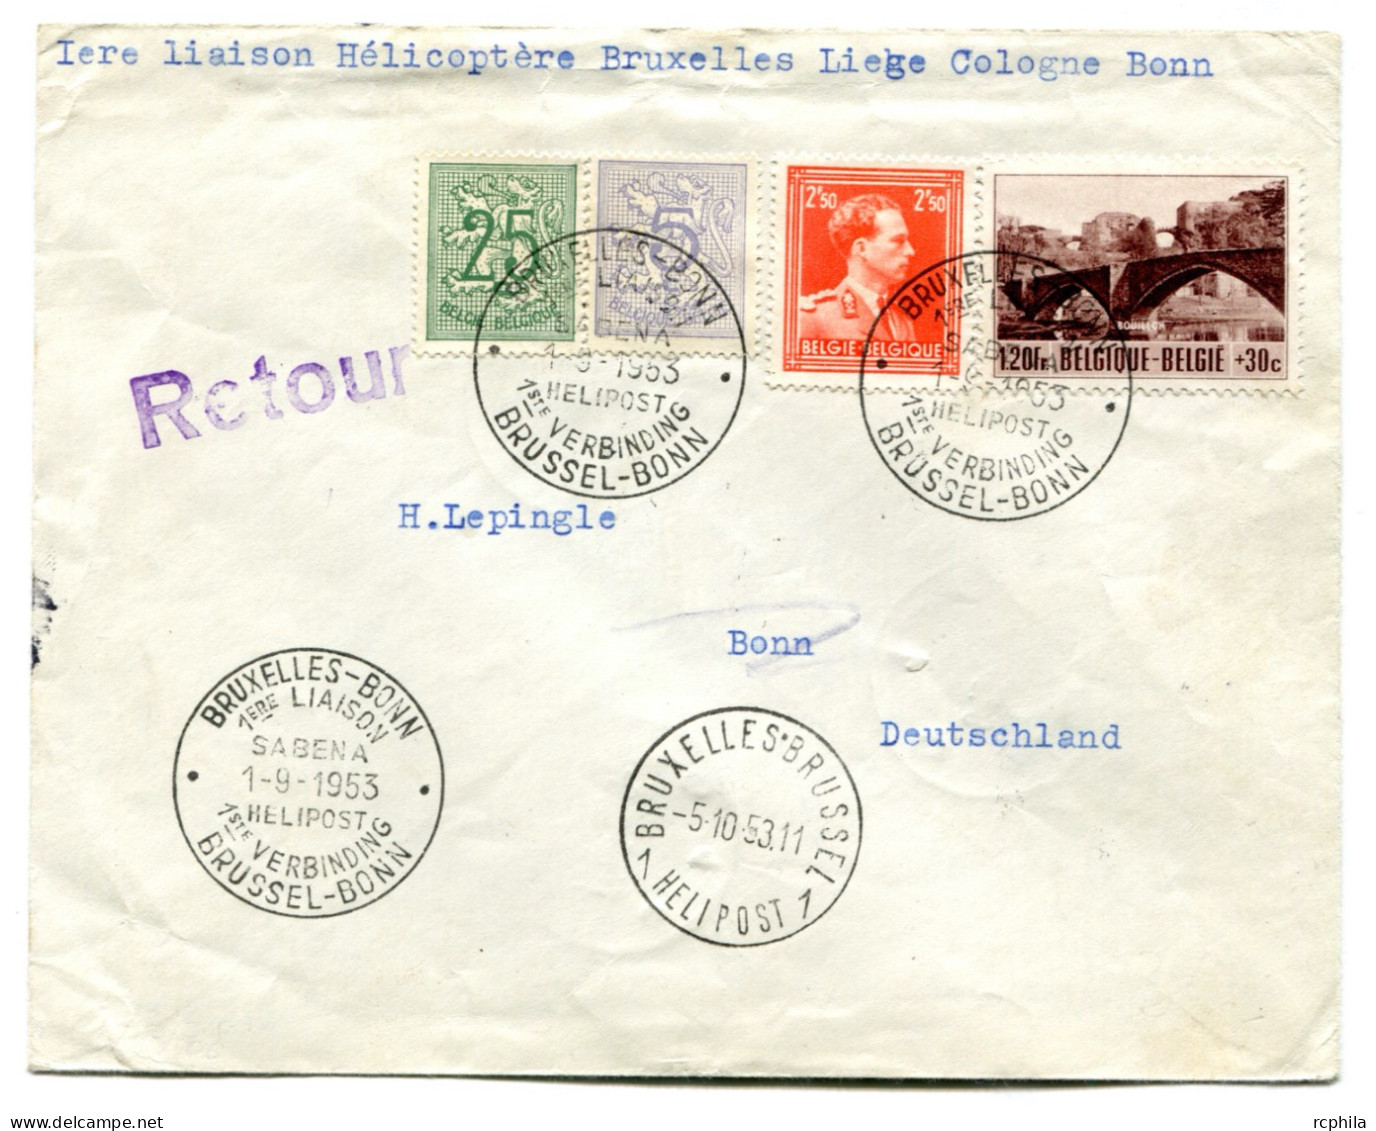 RC 24905 BELGIQUE 1953 1ere LIAISON HELICOPTERE BRUXELLES LIEGE COLOGNE BONN LETTRE POUR L' ALLEMAGNE - Lettres & Documents